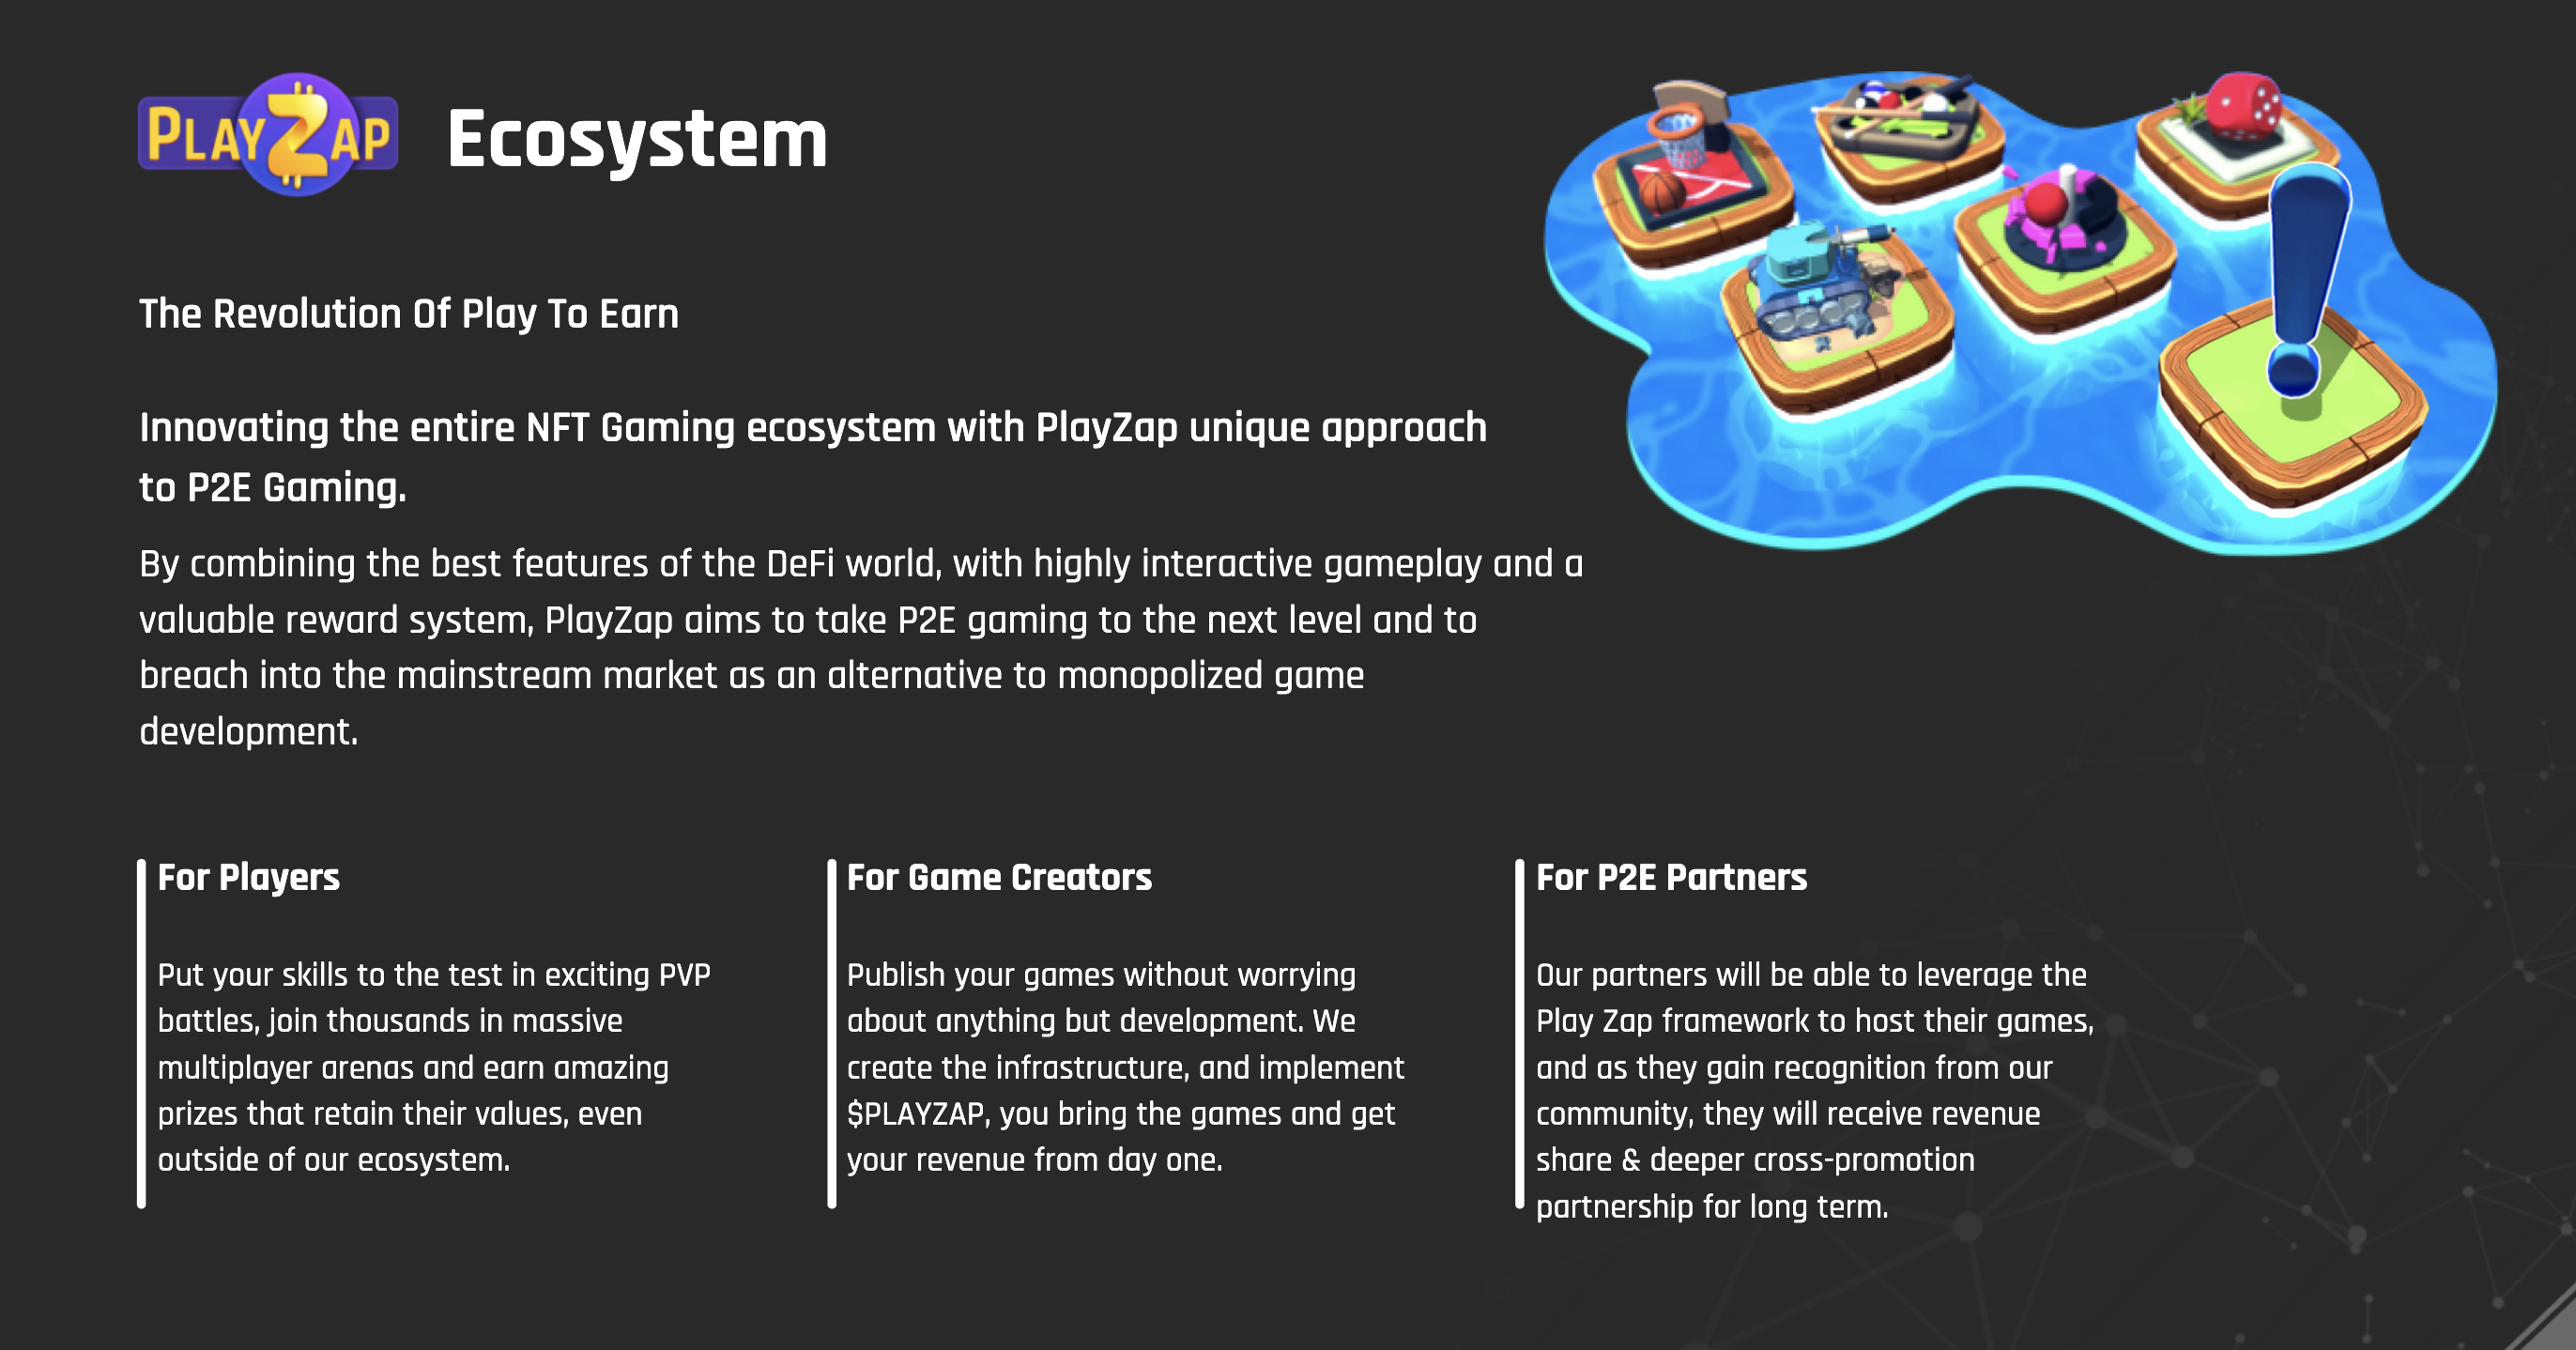 PlayZap Ecosystem